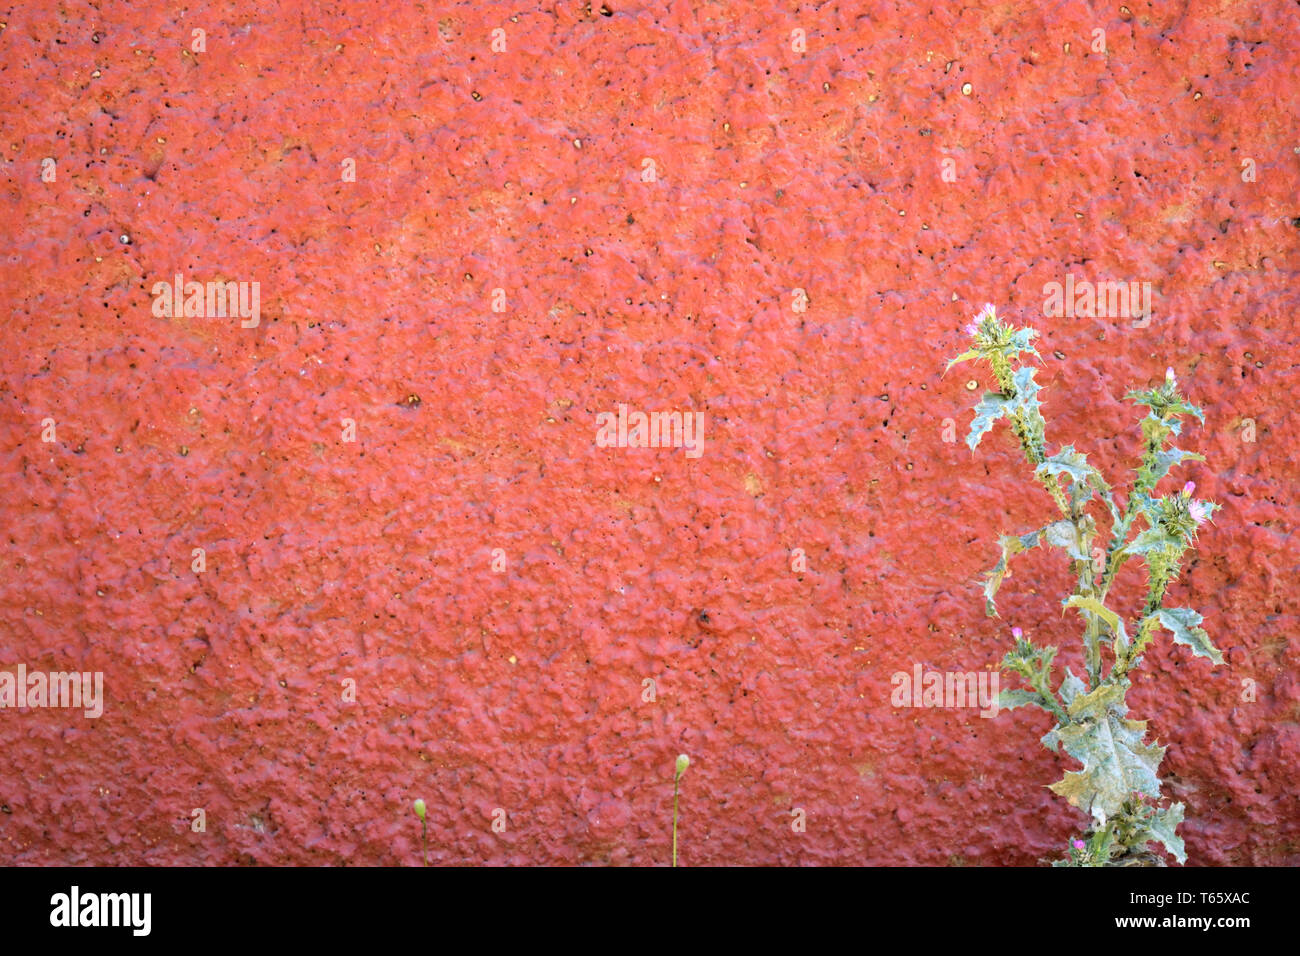 Plante épineuse poussent sur un mur rouge granulaire Banque D'Images